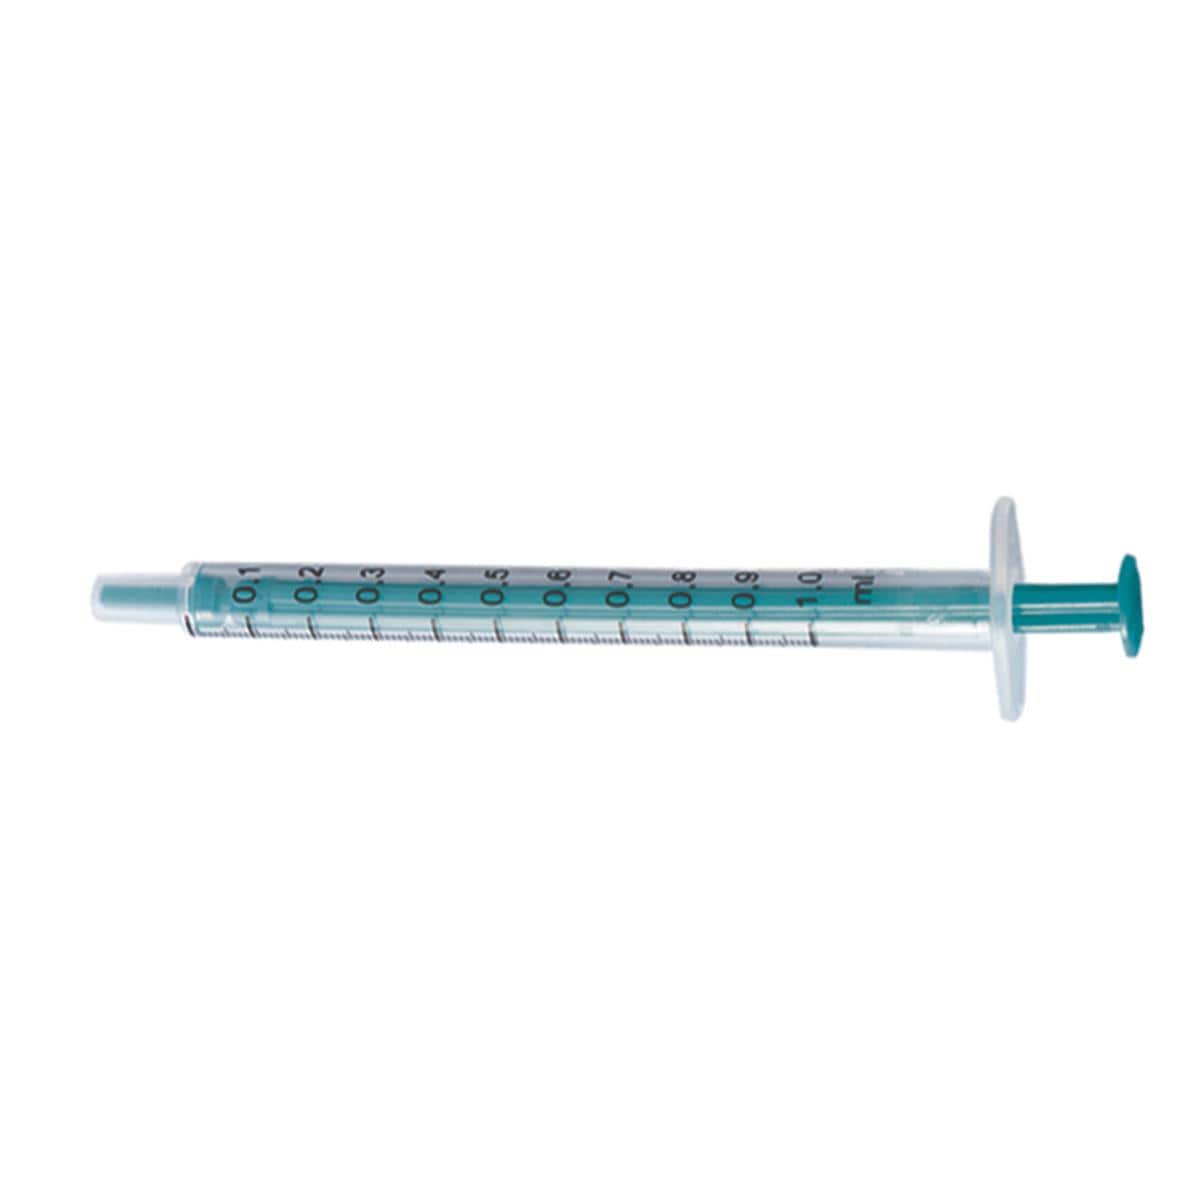 HS Disposable 2-part Syringes 1ml 100pk